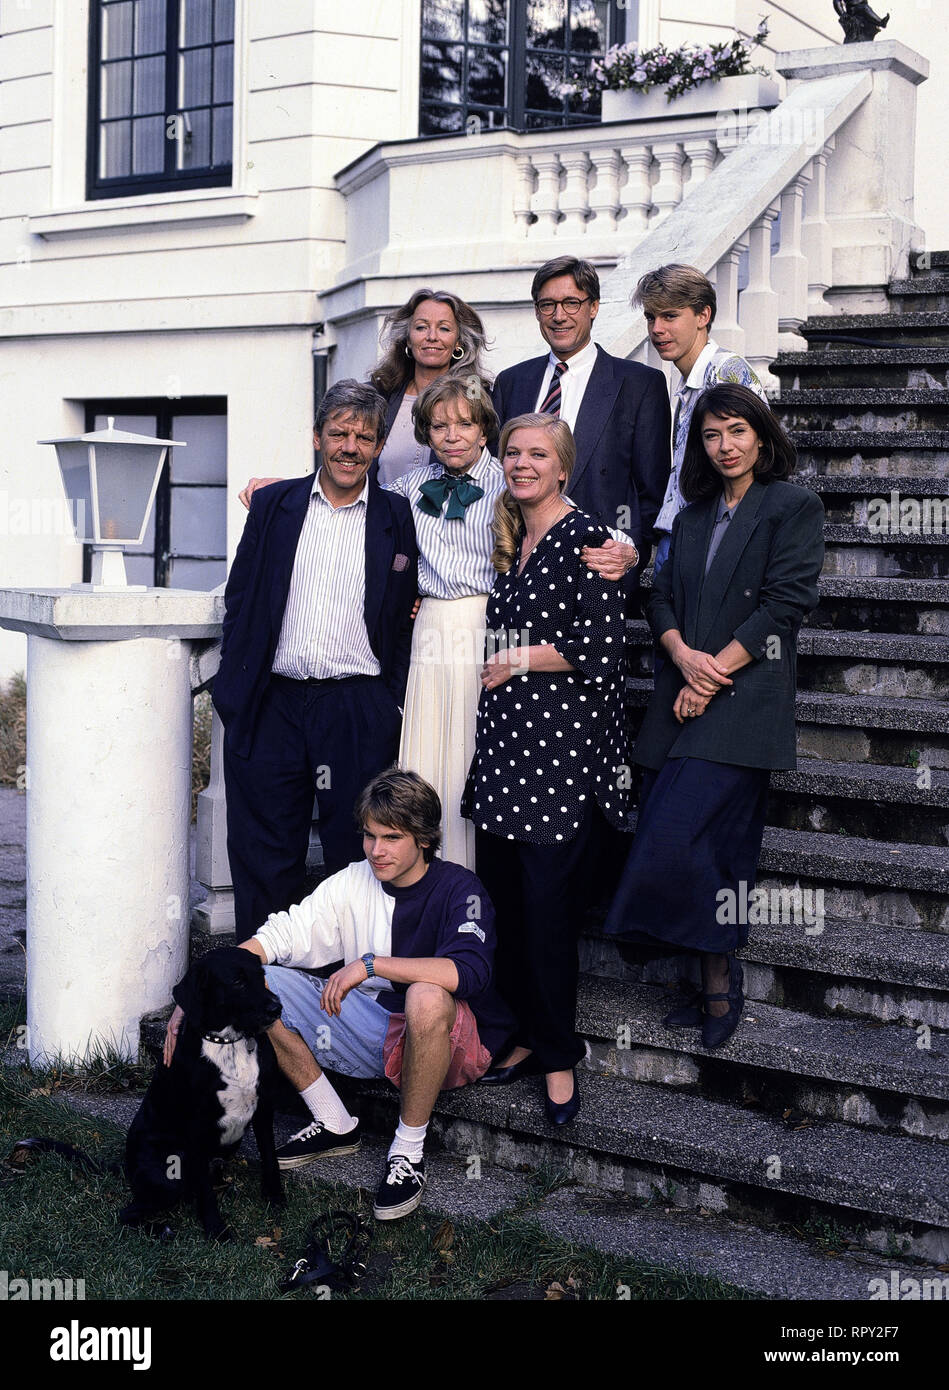 UNSERE HAGENBECKS Familienfest / Deutschland 1990 / Familie Hagenbeck: vorne - Hund 'Giac', WANJA MUES (sitzend), Peter STRIEBECK, TILLY LAUENSTEIN, HEIDEMARIE WENZEL, GIULIA FOLLINA (Mittlere Reihe), DAPHNE WAGNER, RAINER RUDOLPH und DALESCH CRISTIANA (Hintere Reihe) EM / Überschrift: UNSERE HAGENBECKS / Deutschland 1990 Foto Stock